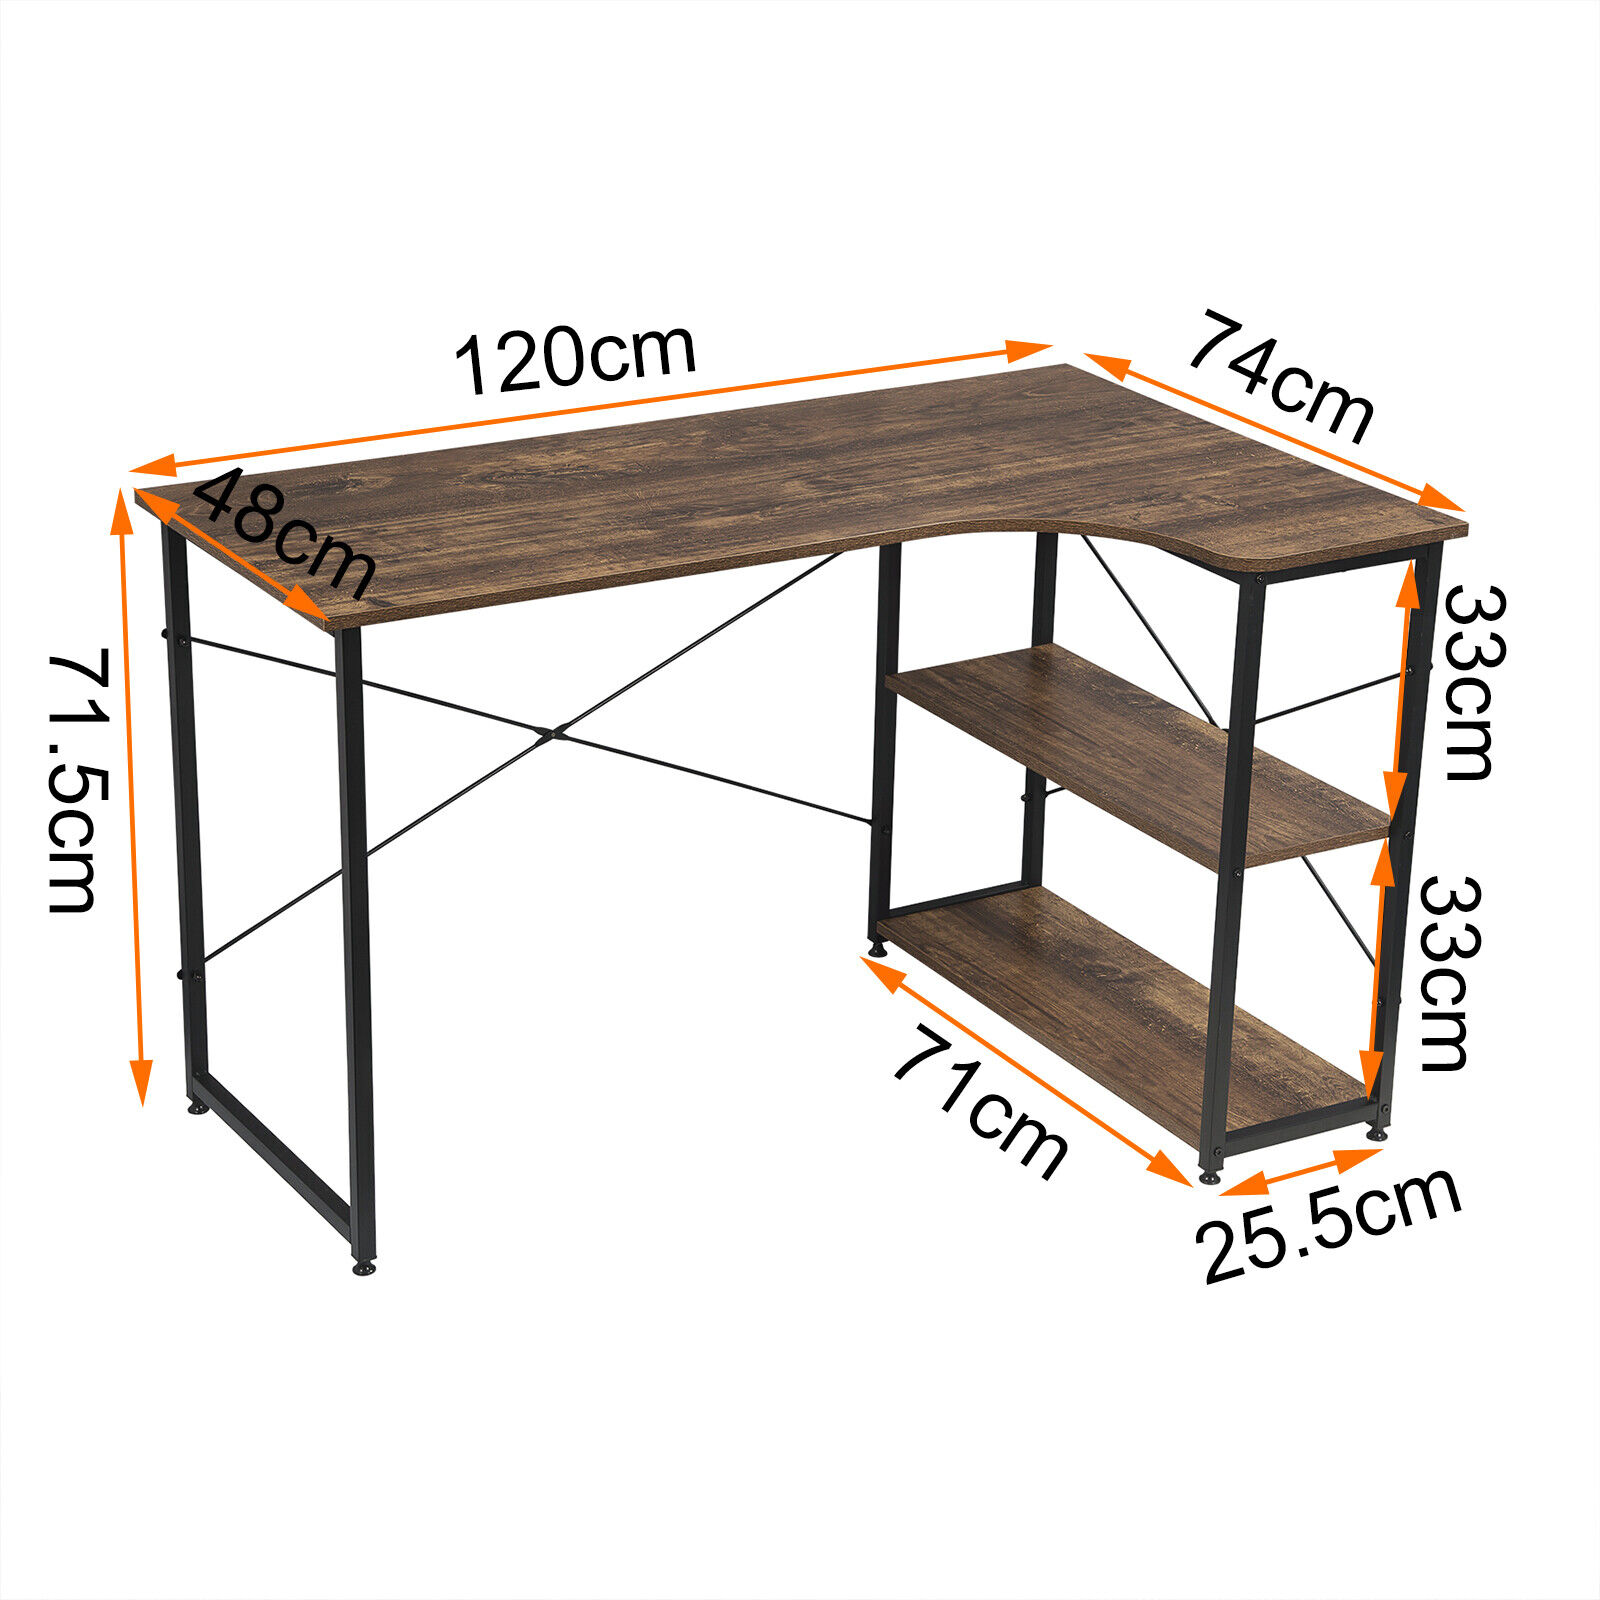 Eckschreibtisch Schreibtisch mit Regale L-Form Arbeitstisch Winkelschreibtisch